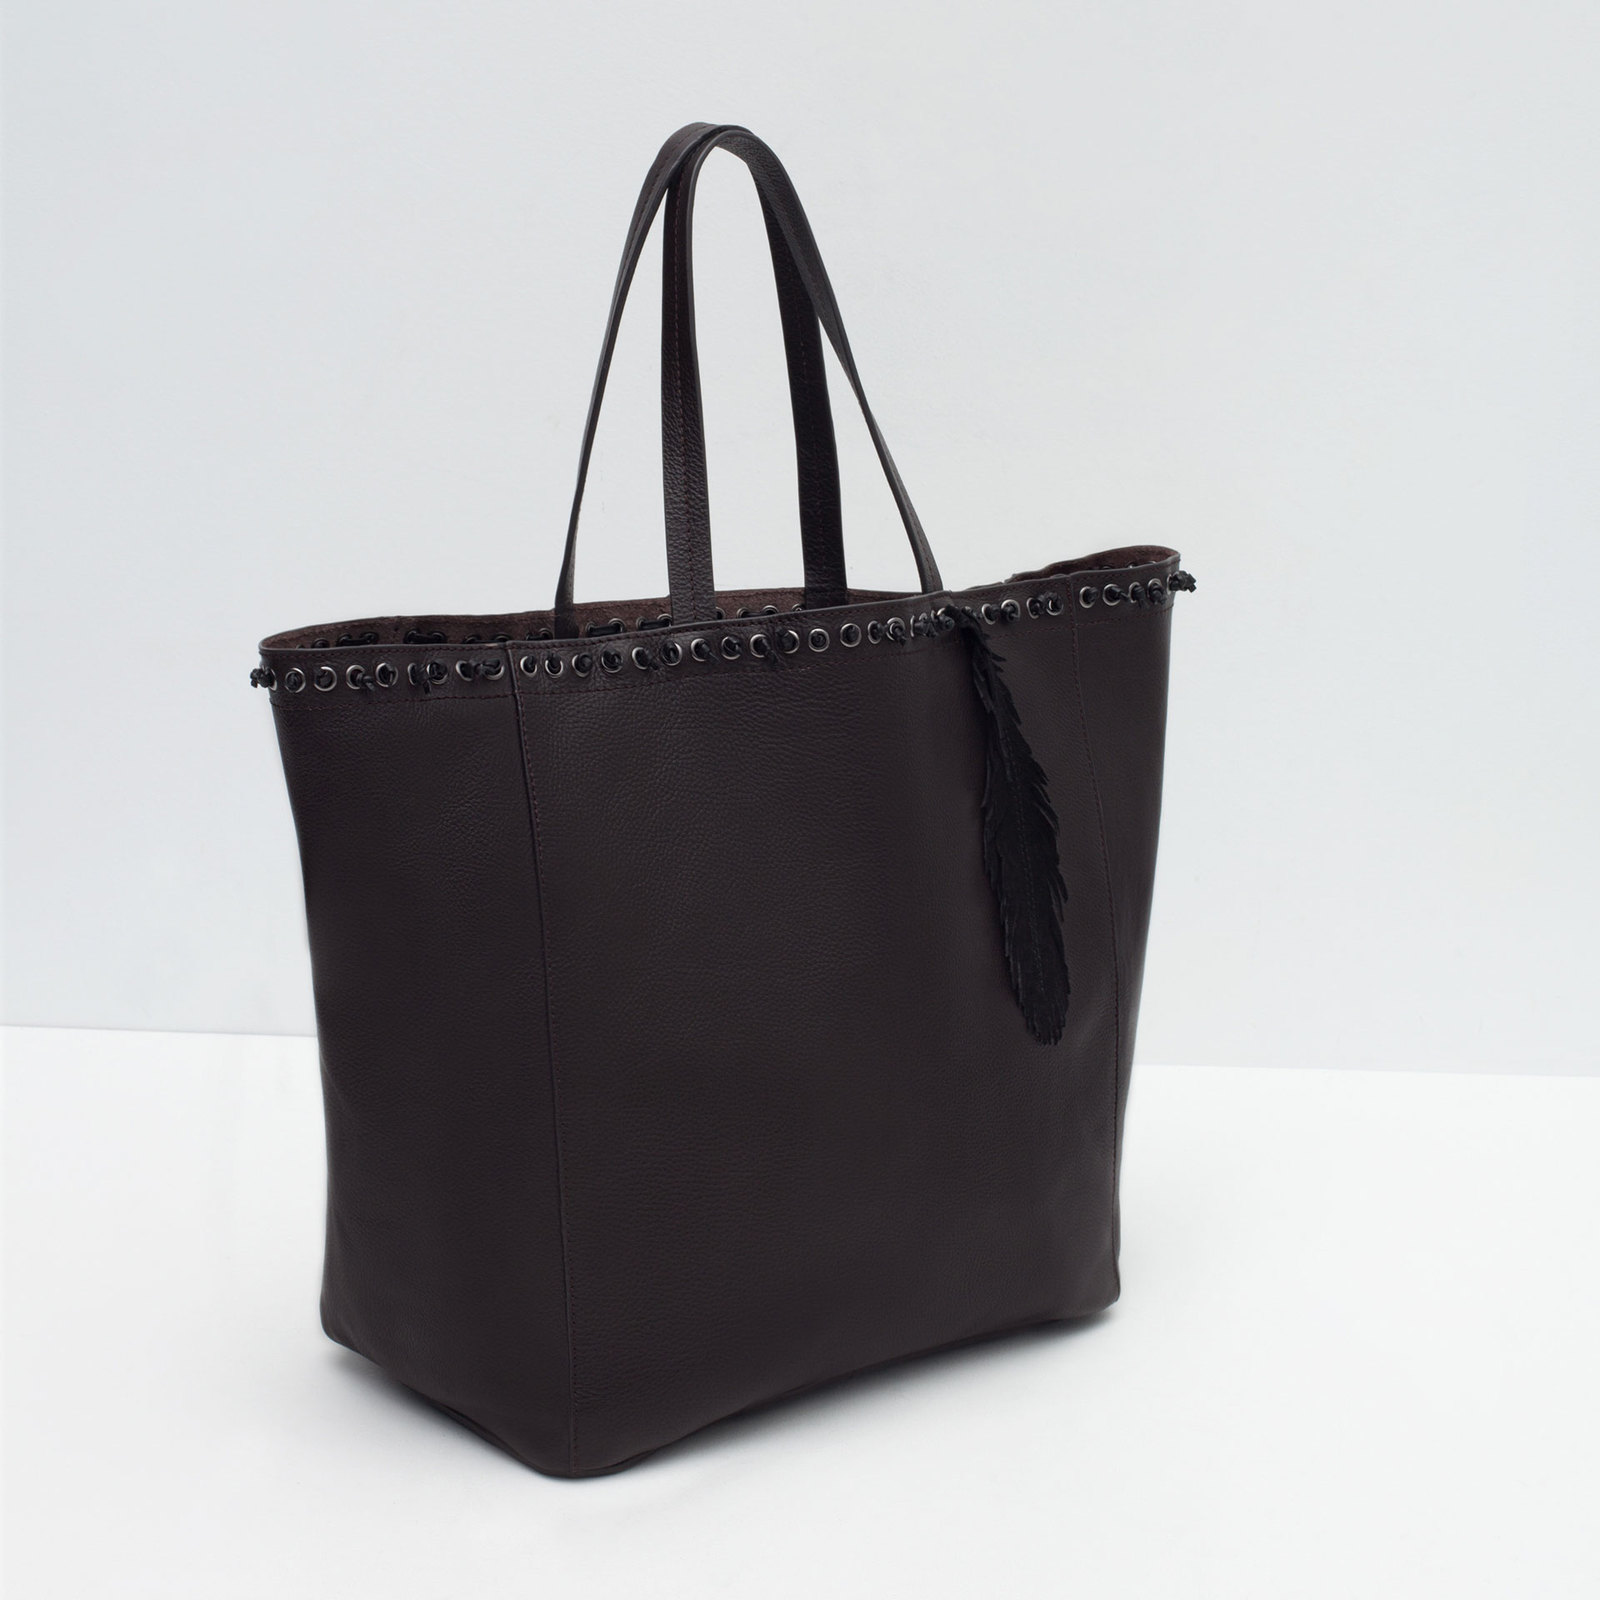 Zara csábos női fekete bevásárló táska 2015.10.15 fotója